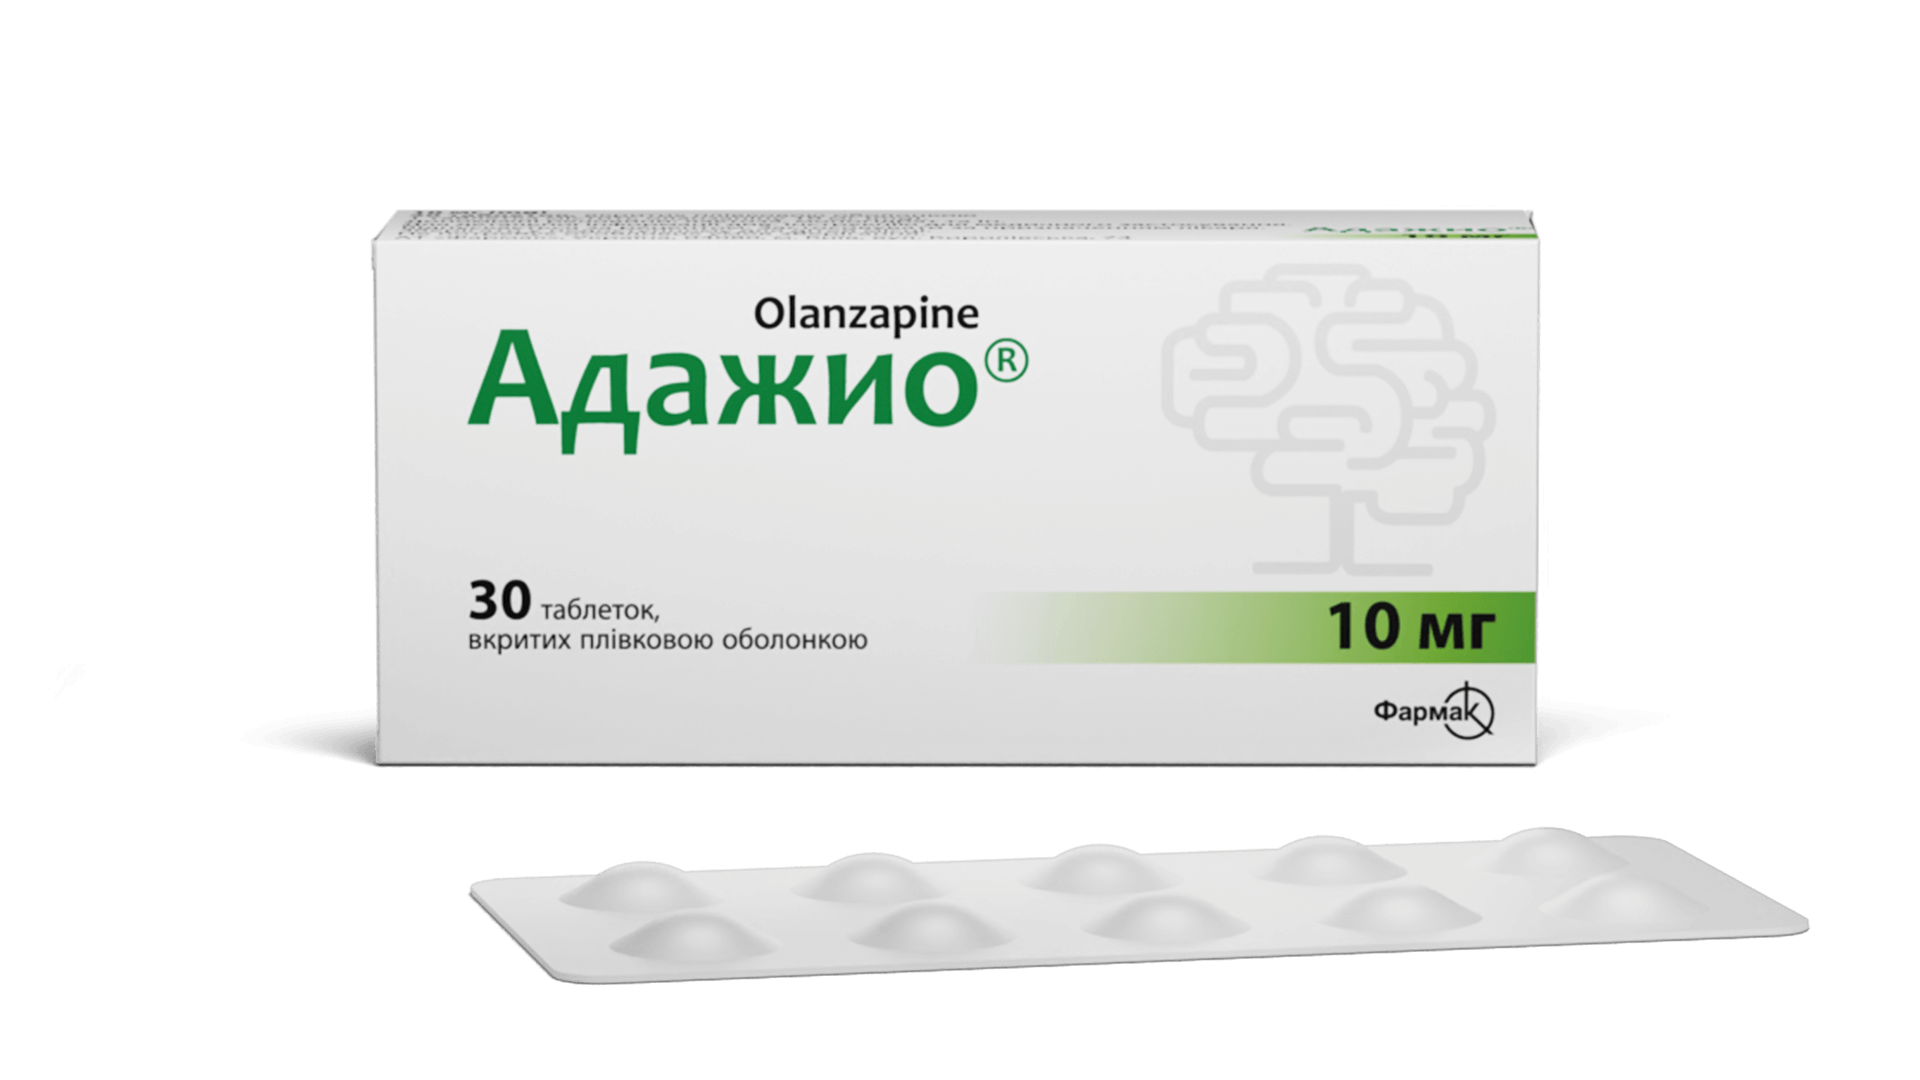 Адажио® 10 мг (2)